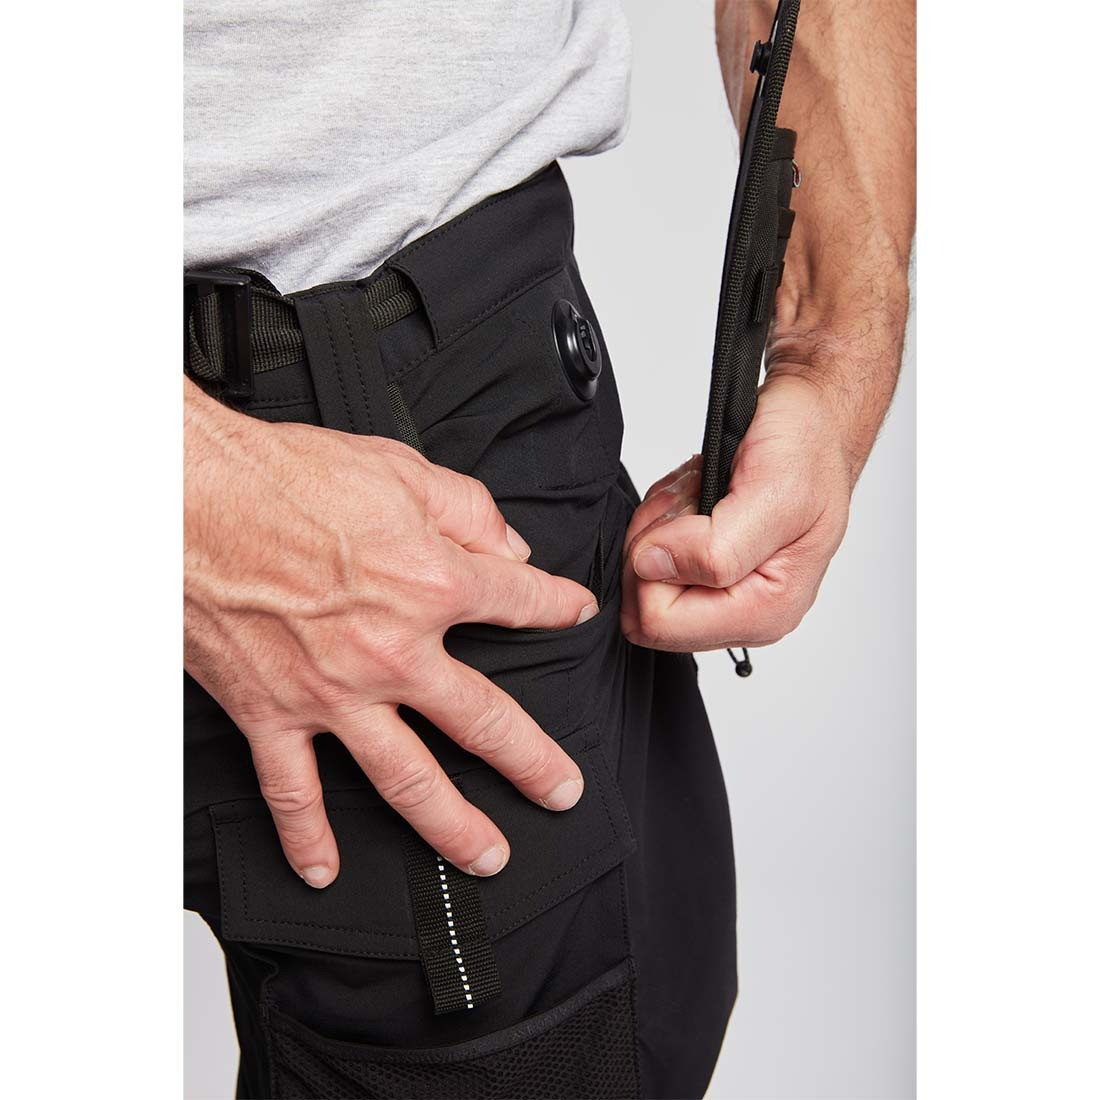 Pantalón Ultimate Modular 3 en 1 - Ropa de protección